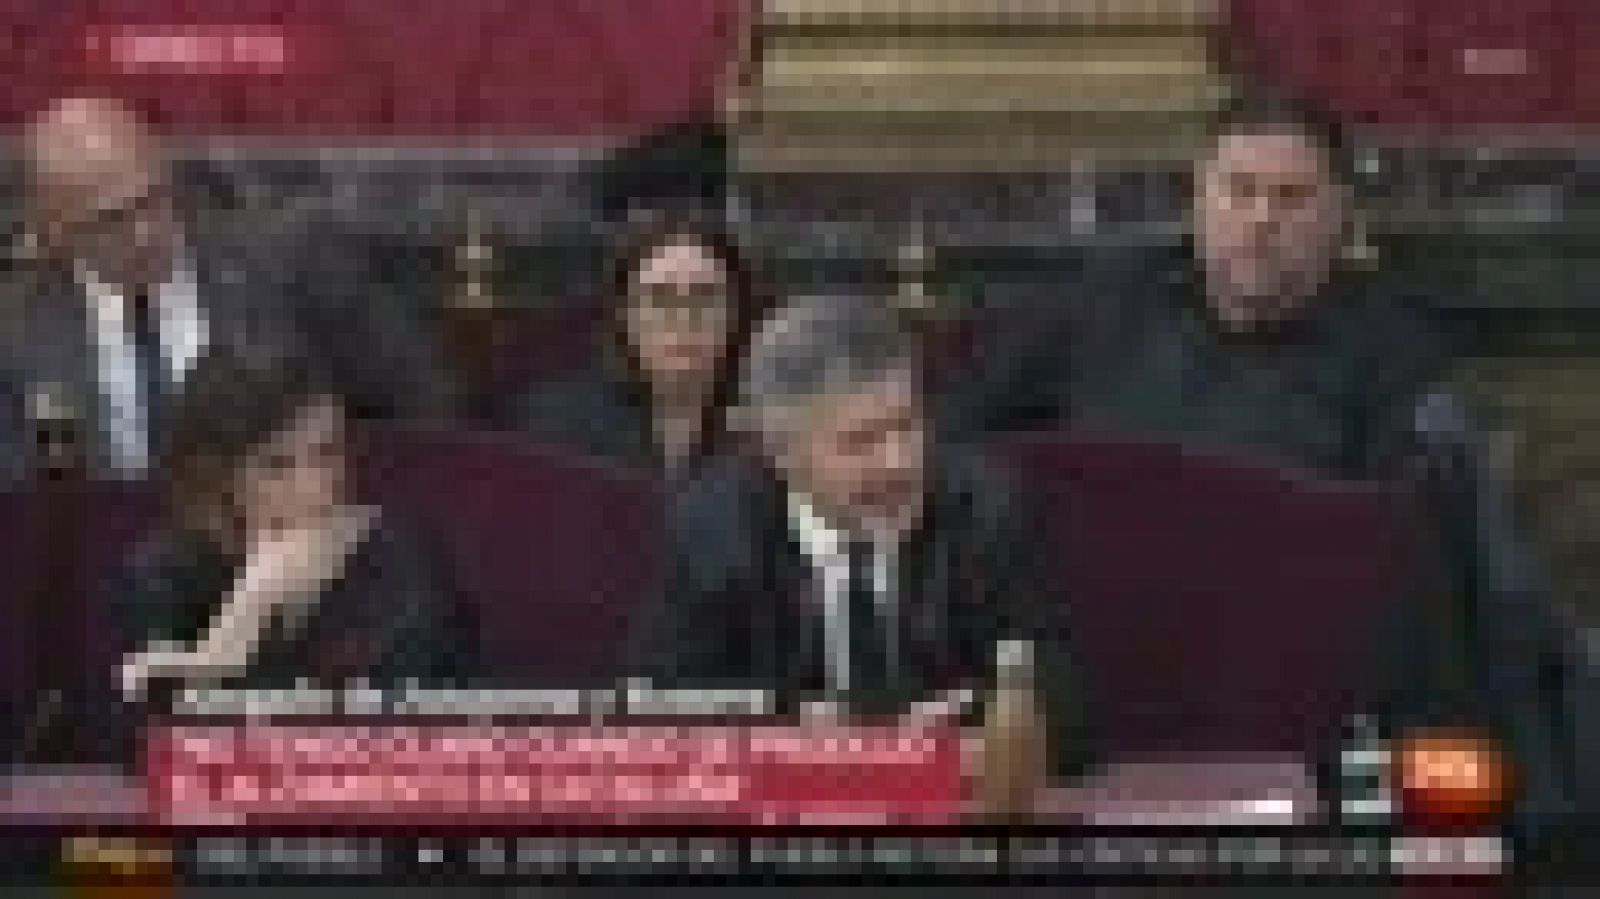 Juicio procés: El abogado de Junqueras: "Se está confundiendo la desobediencia con la rebelión"